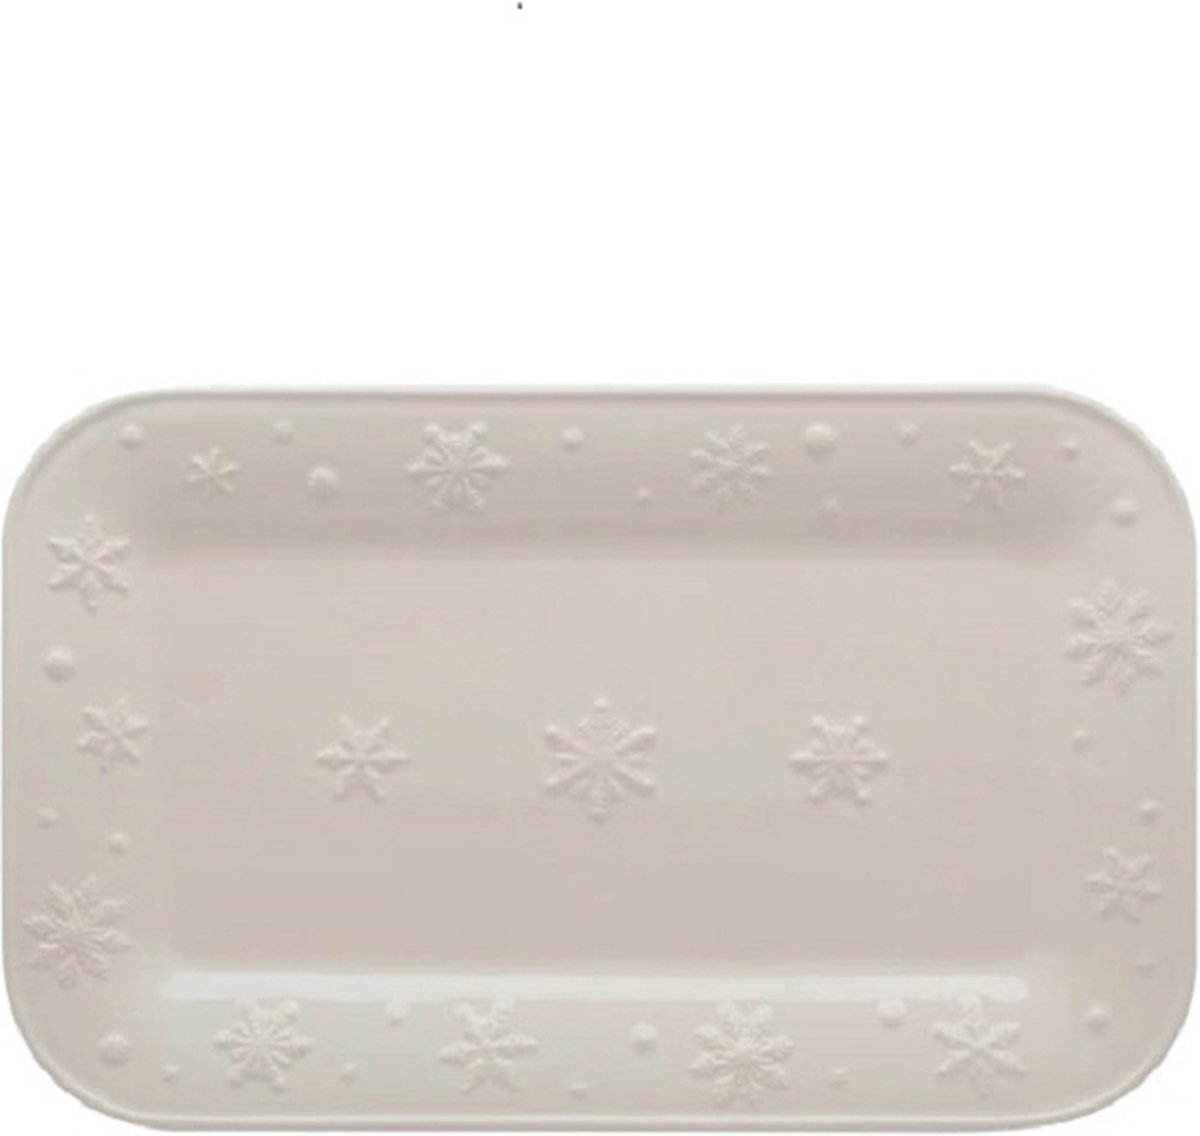 Bordallo Pinheiro Snow Flakes Schaal - Kerst - Wit - Aardewerk - 34,5 cm x 21,5 cm